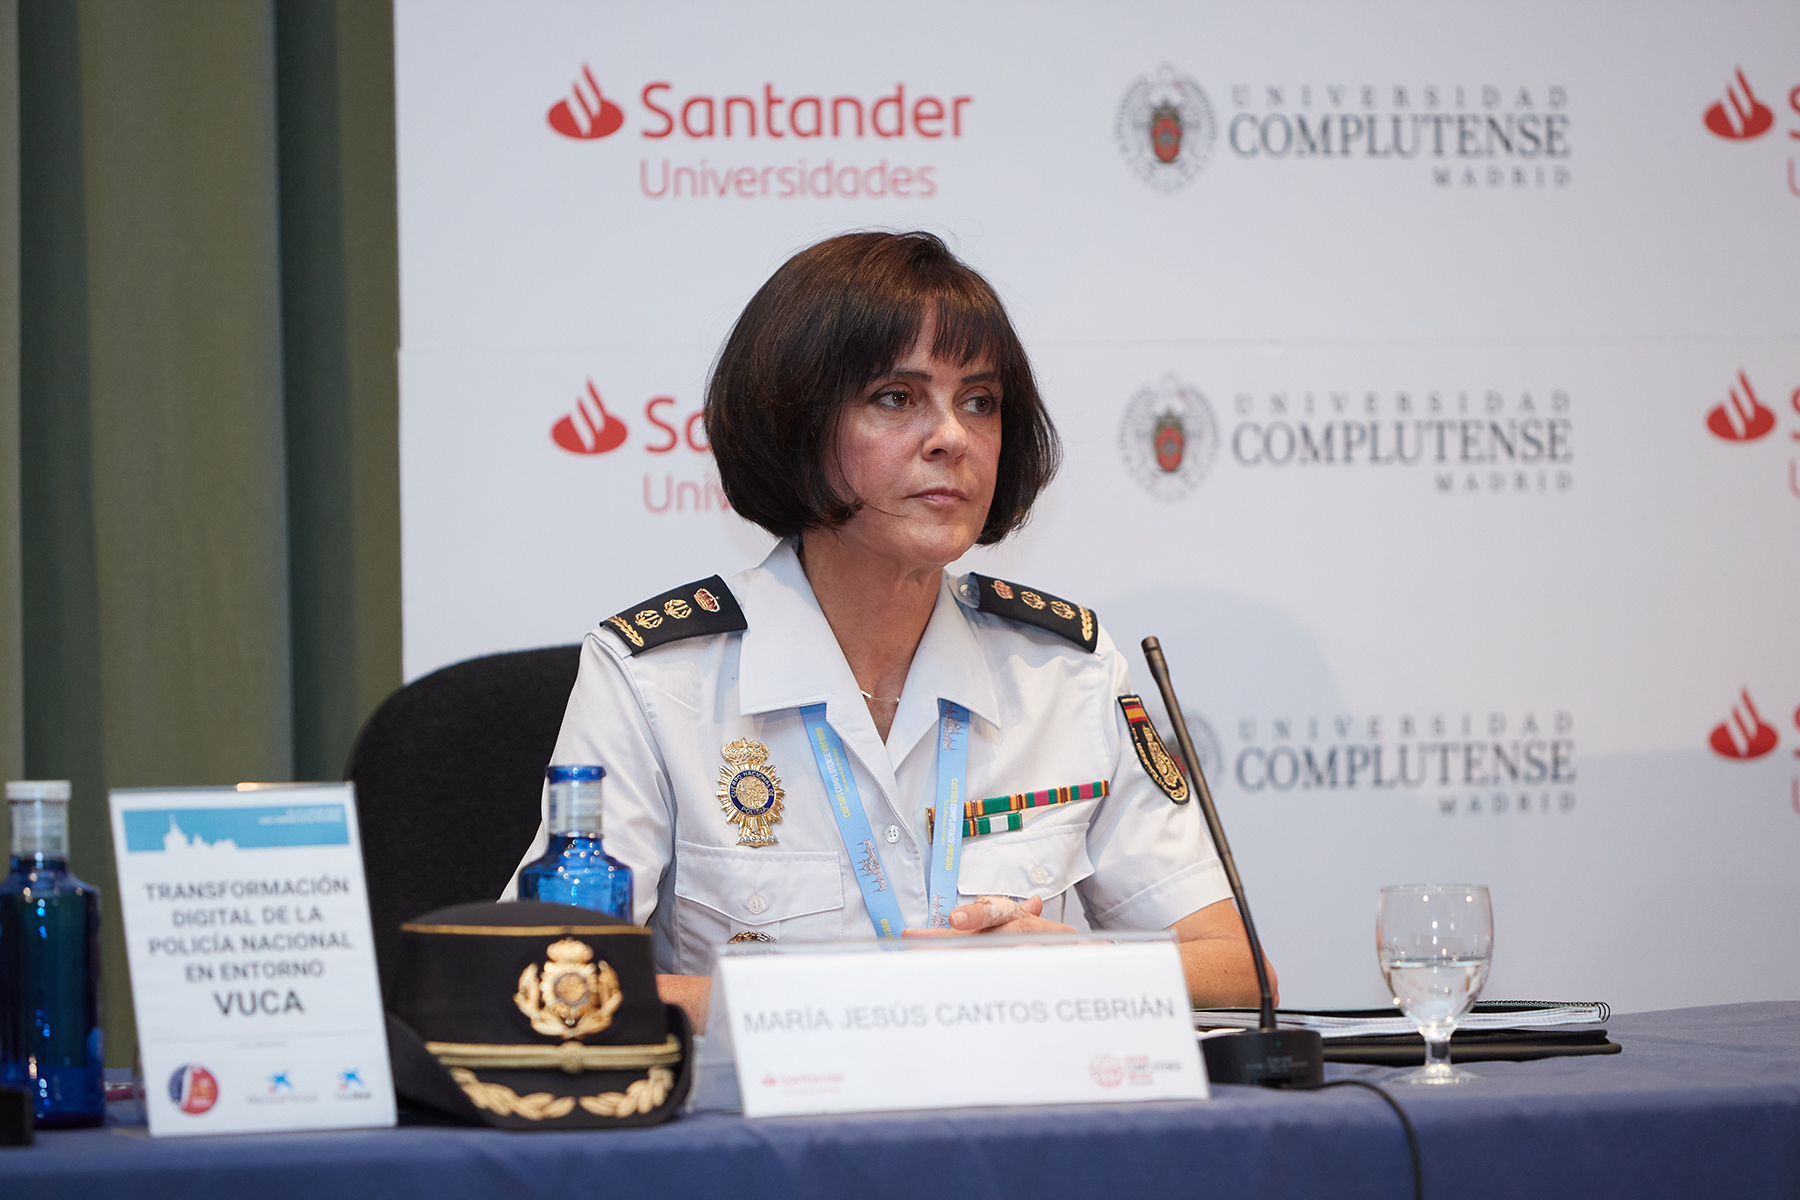 Primer plano en la mesa de ponentes de la Comisaría María Jesús Cantos Cebrian.